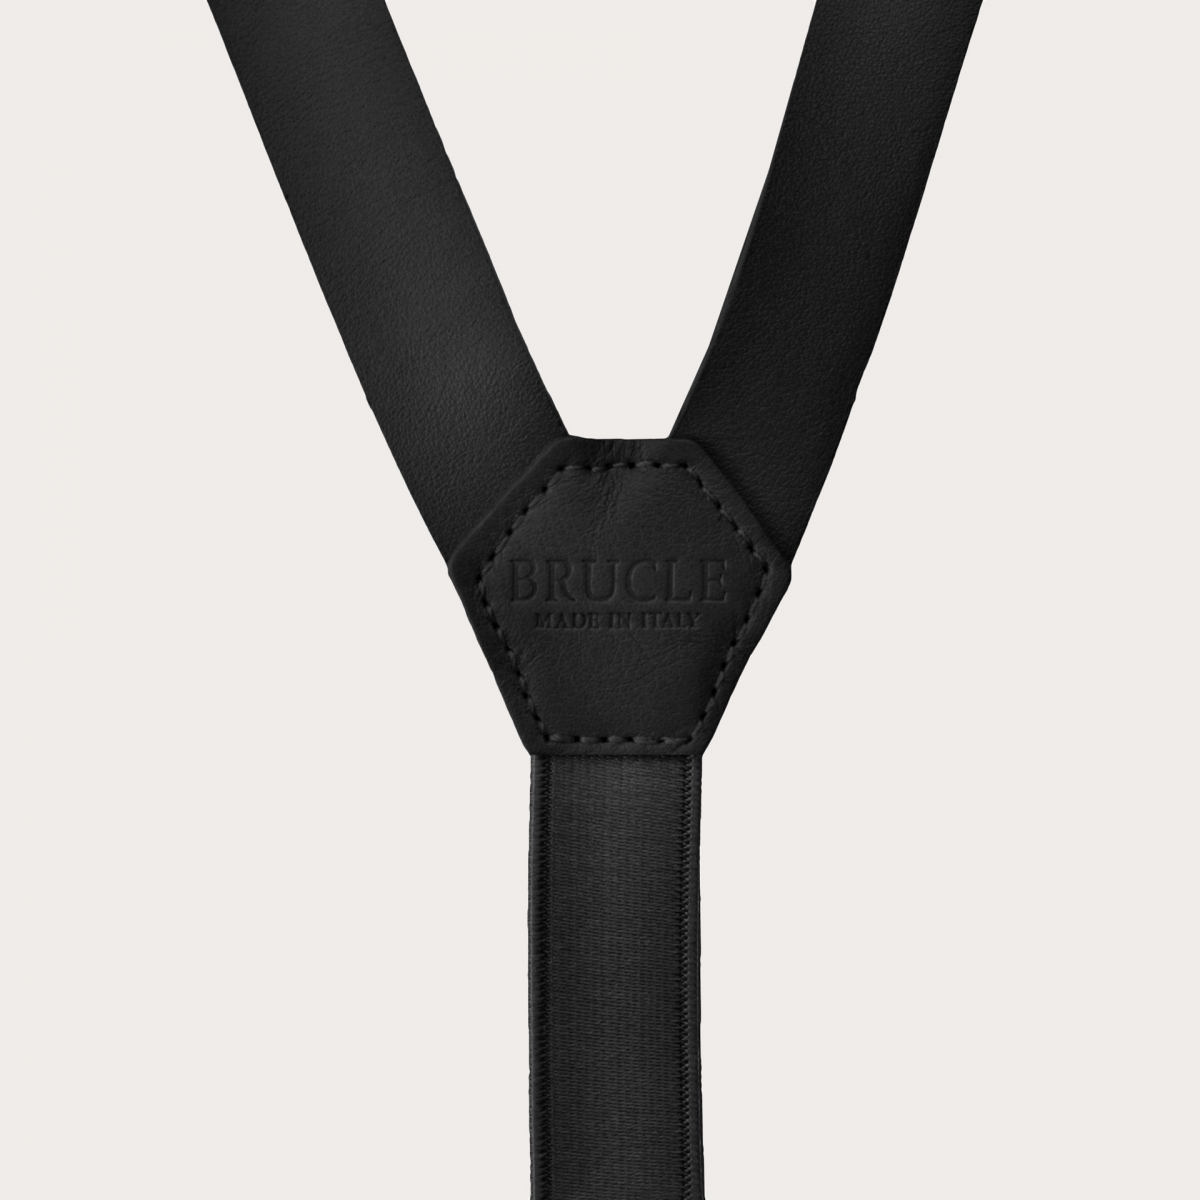 BRUCLE Y-shape leather suspenders, black